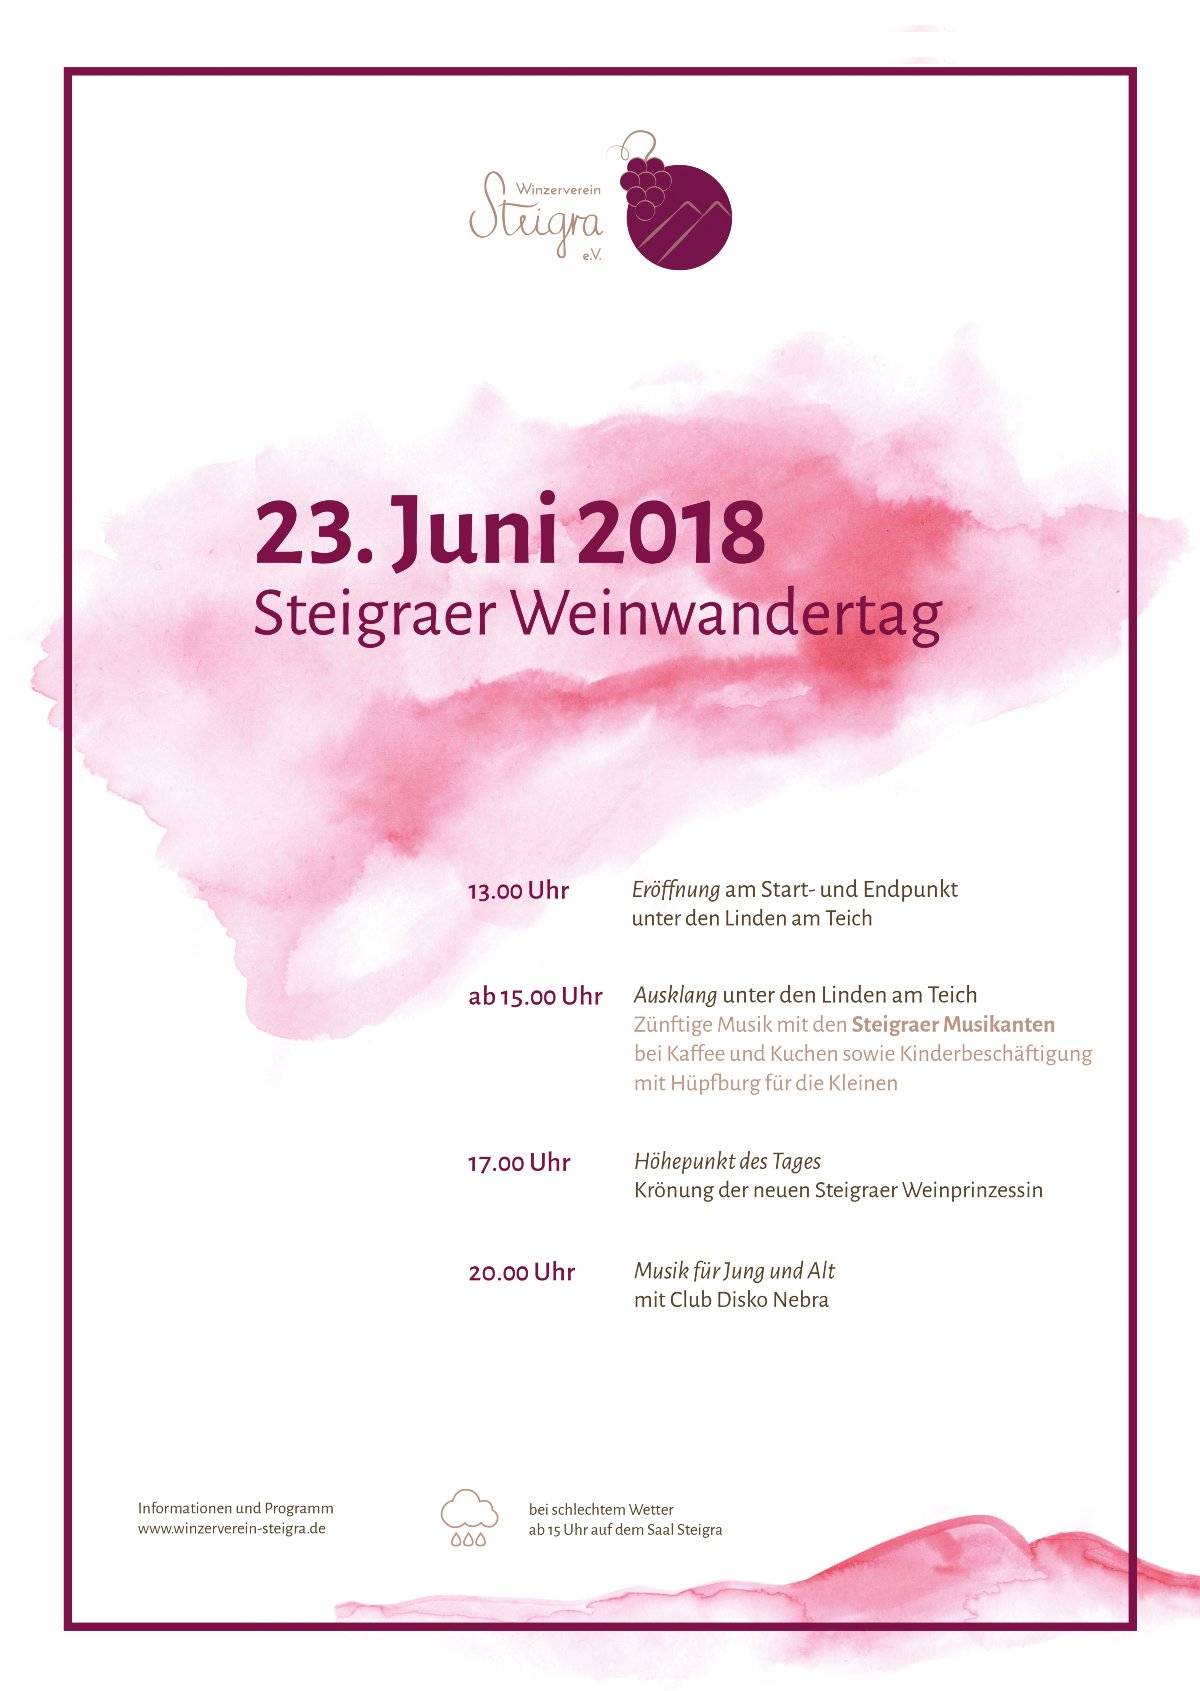 Die Weinwanderung in Steigra am 23. Juni 2018 - und zurck